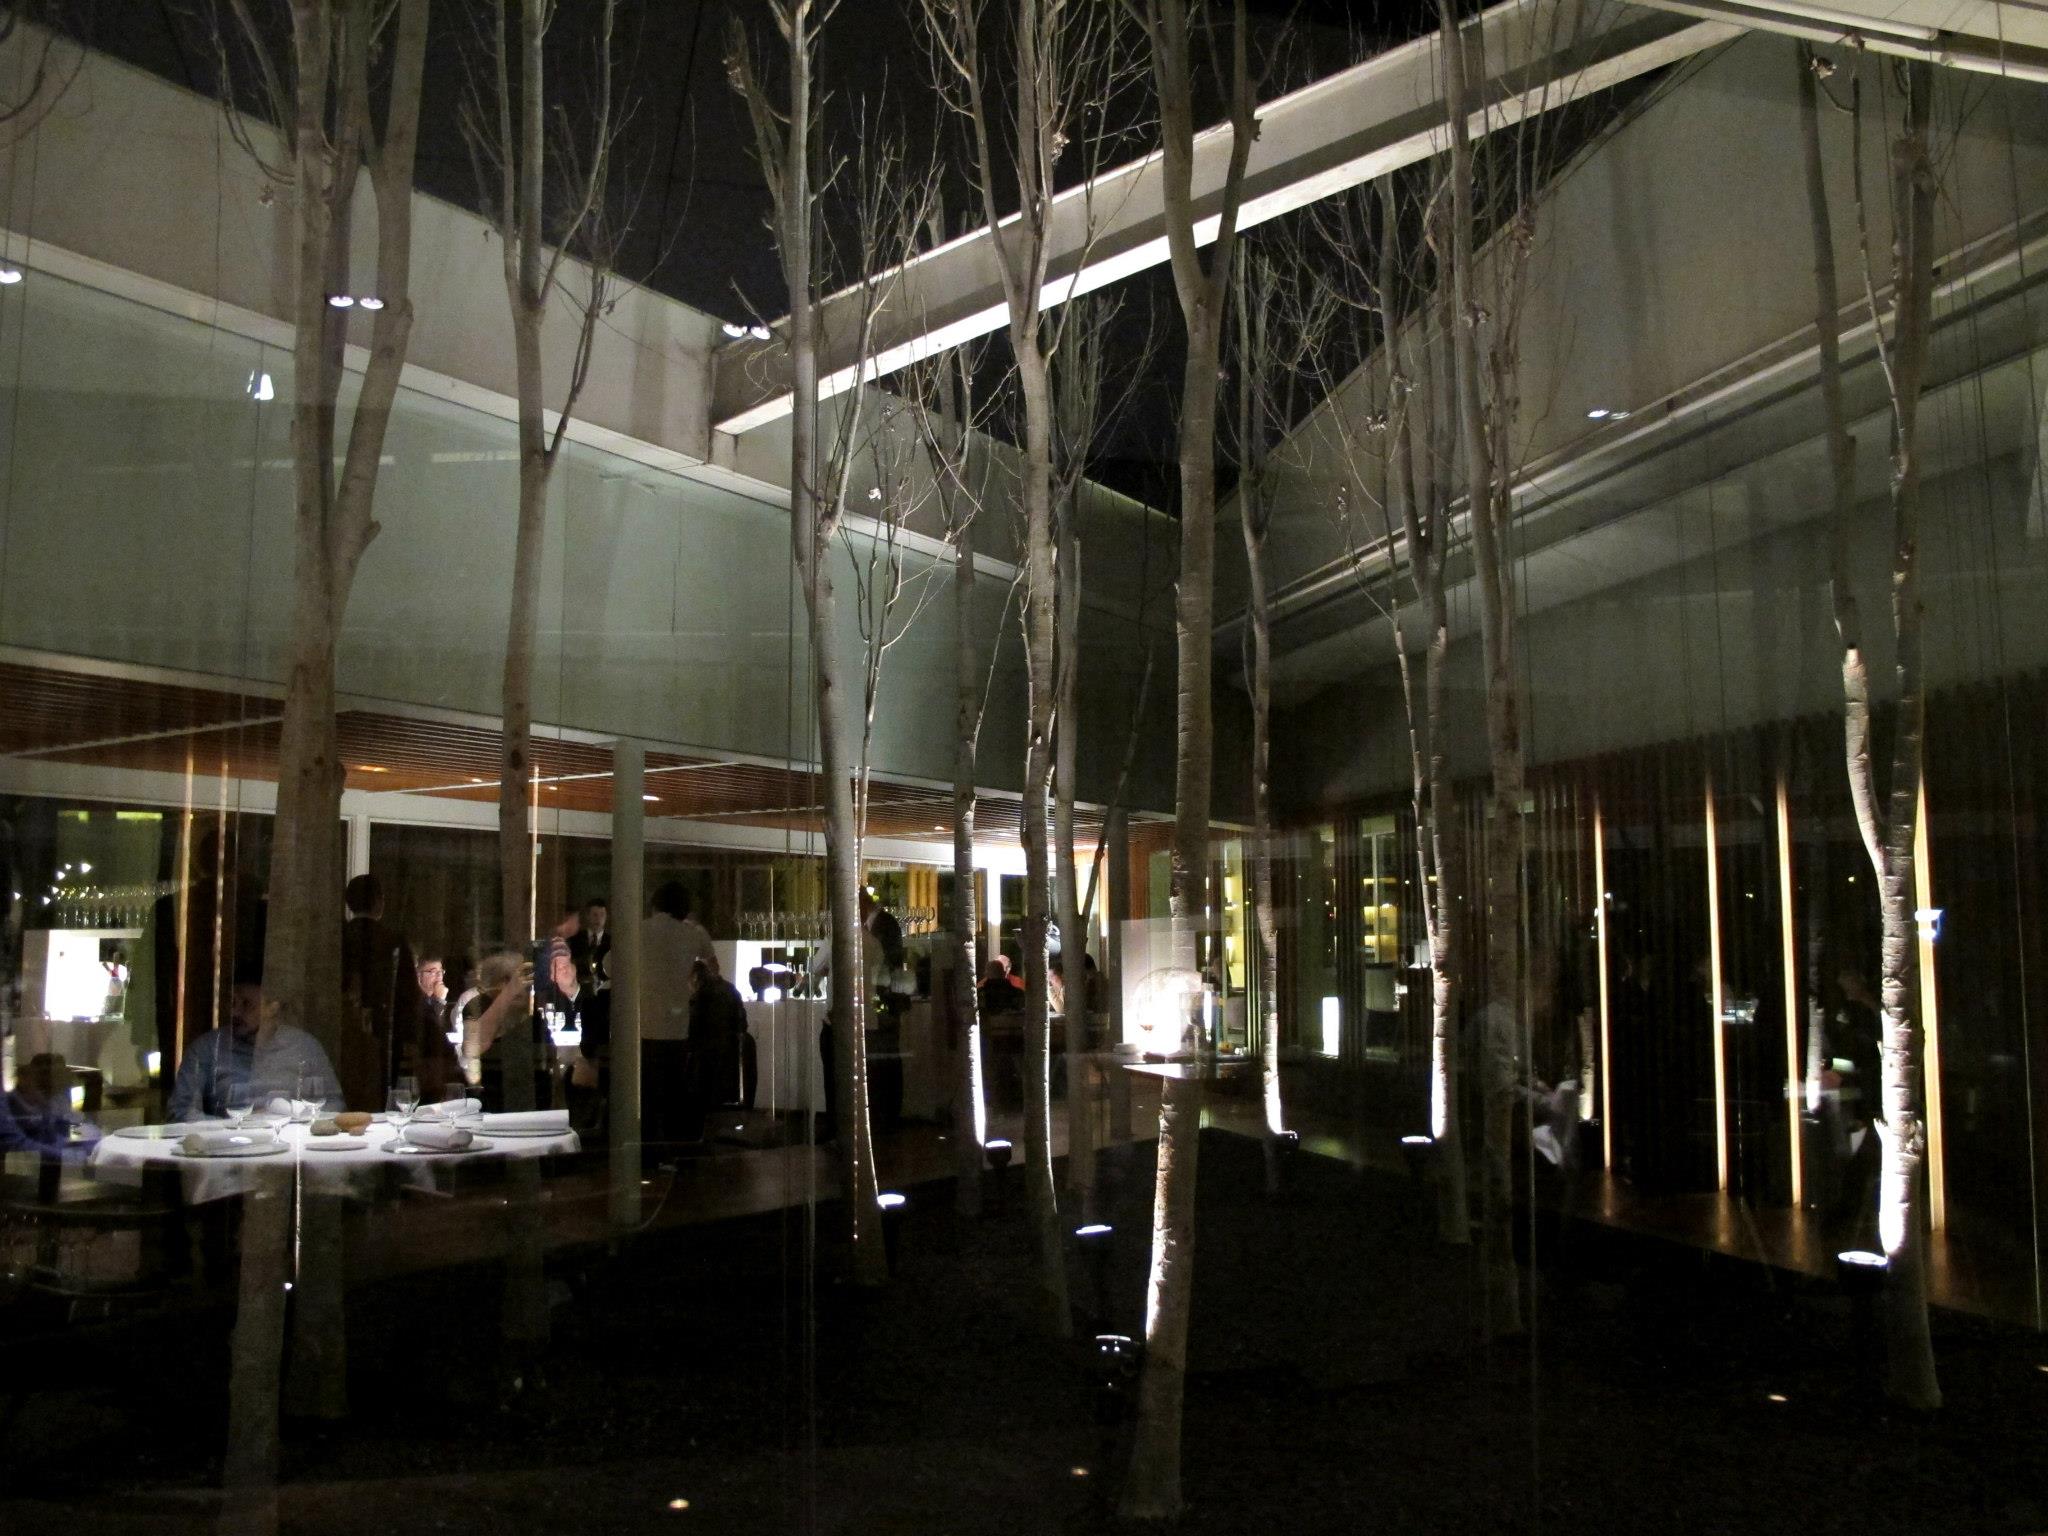 Restaurantul este cotat cu trei stele in Ghidul Michelin, adica nivelul suprem al calitatii